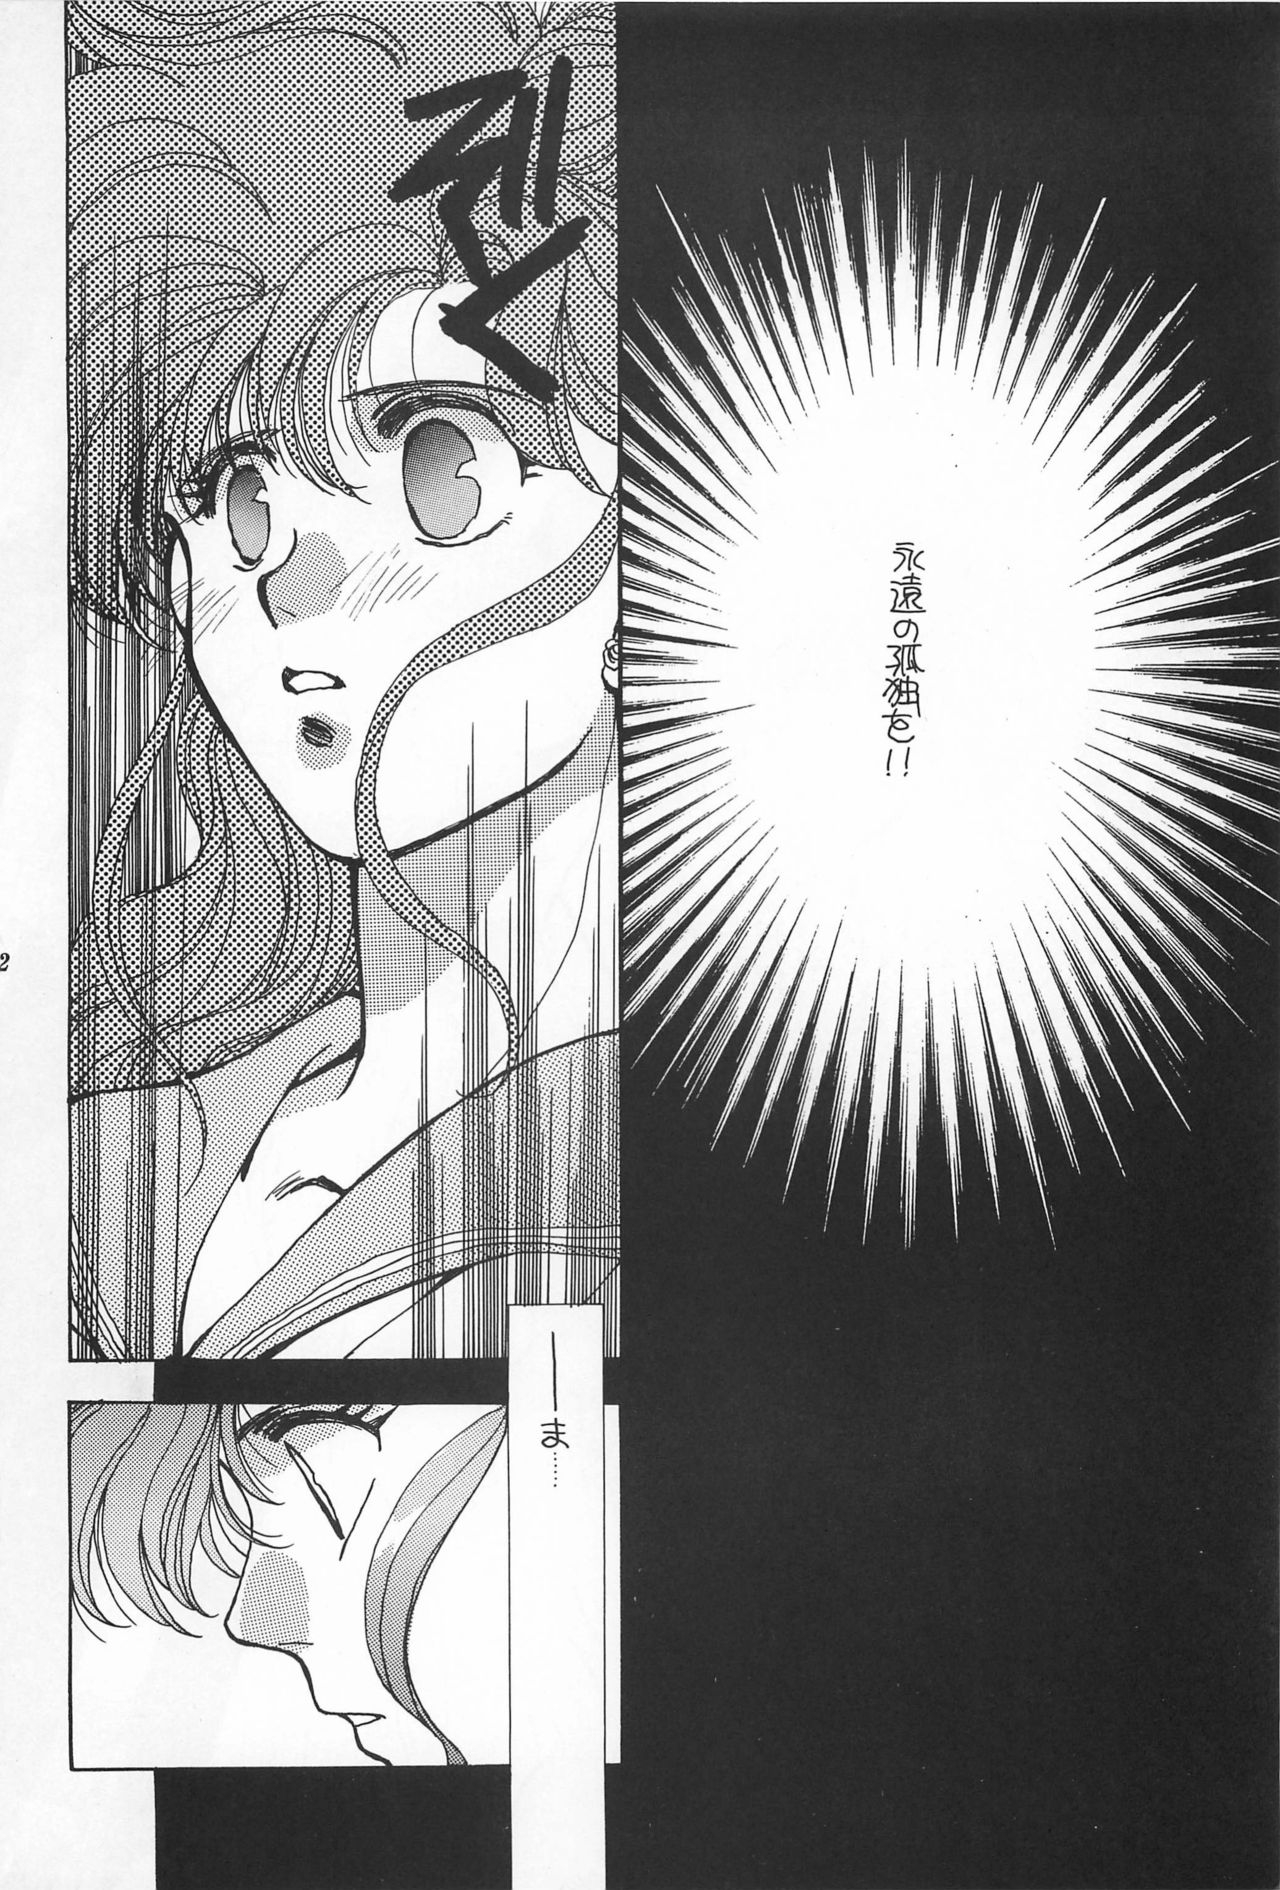 [Hello World (Muttri Moony)] Kaze no You ni Yume no You ni - Sailor Moon Collection (Sailor Moon) 191